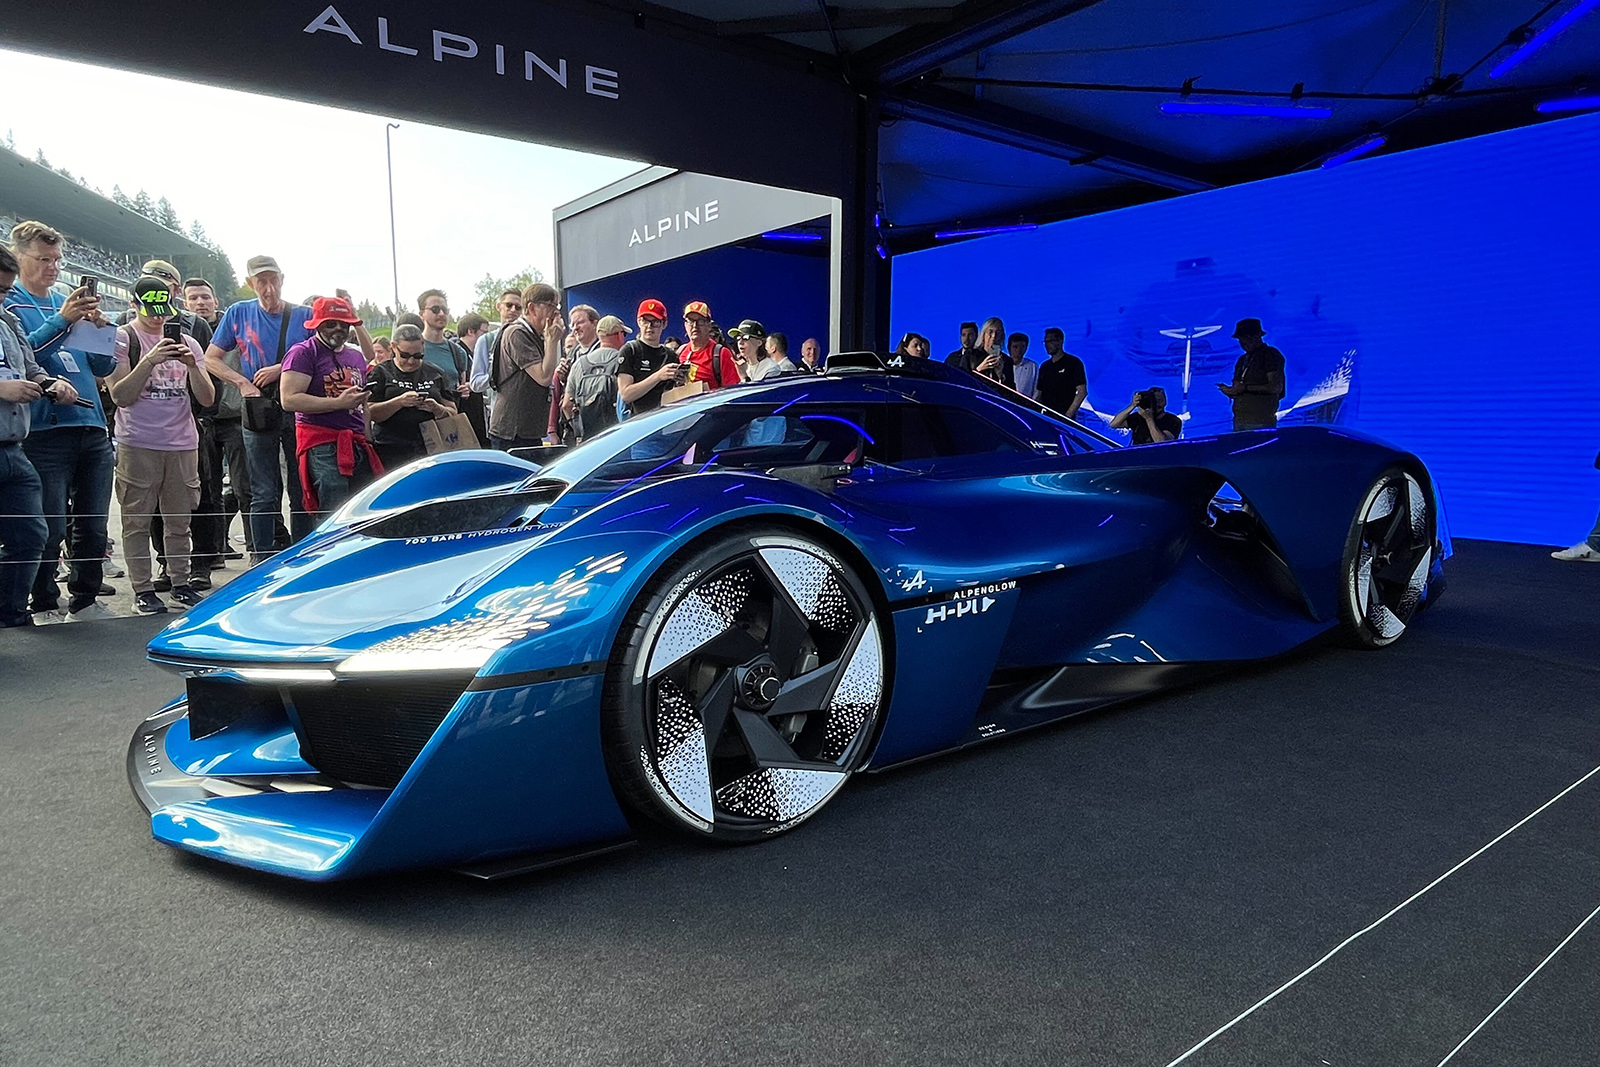 Alpine تكشف عن سيارة رياضية تعمل بالوقود الهيدروجيني بقوة 335 حصاناً